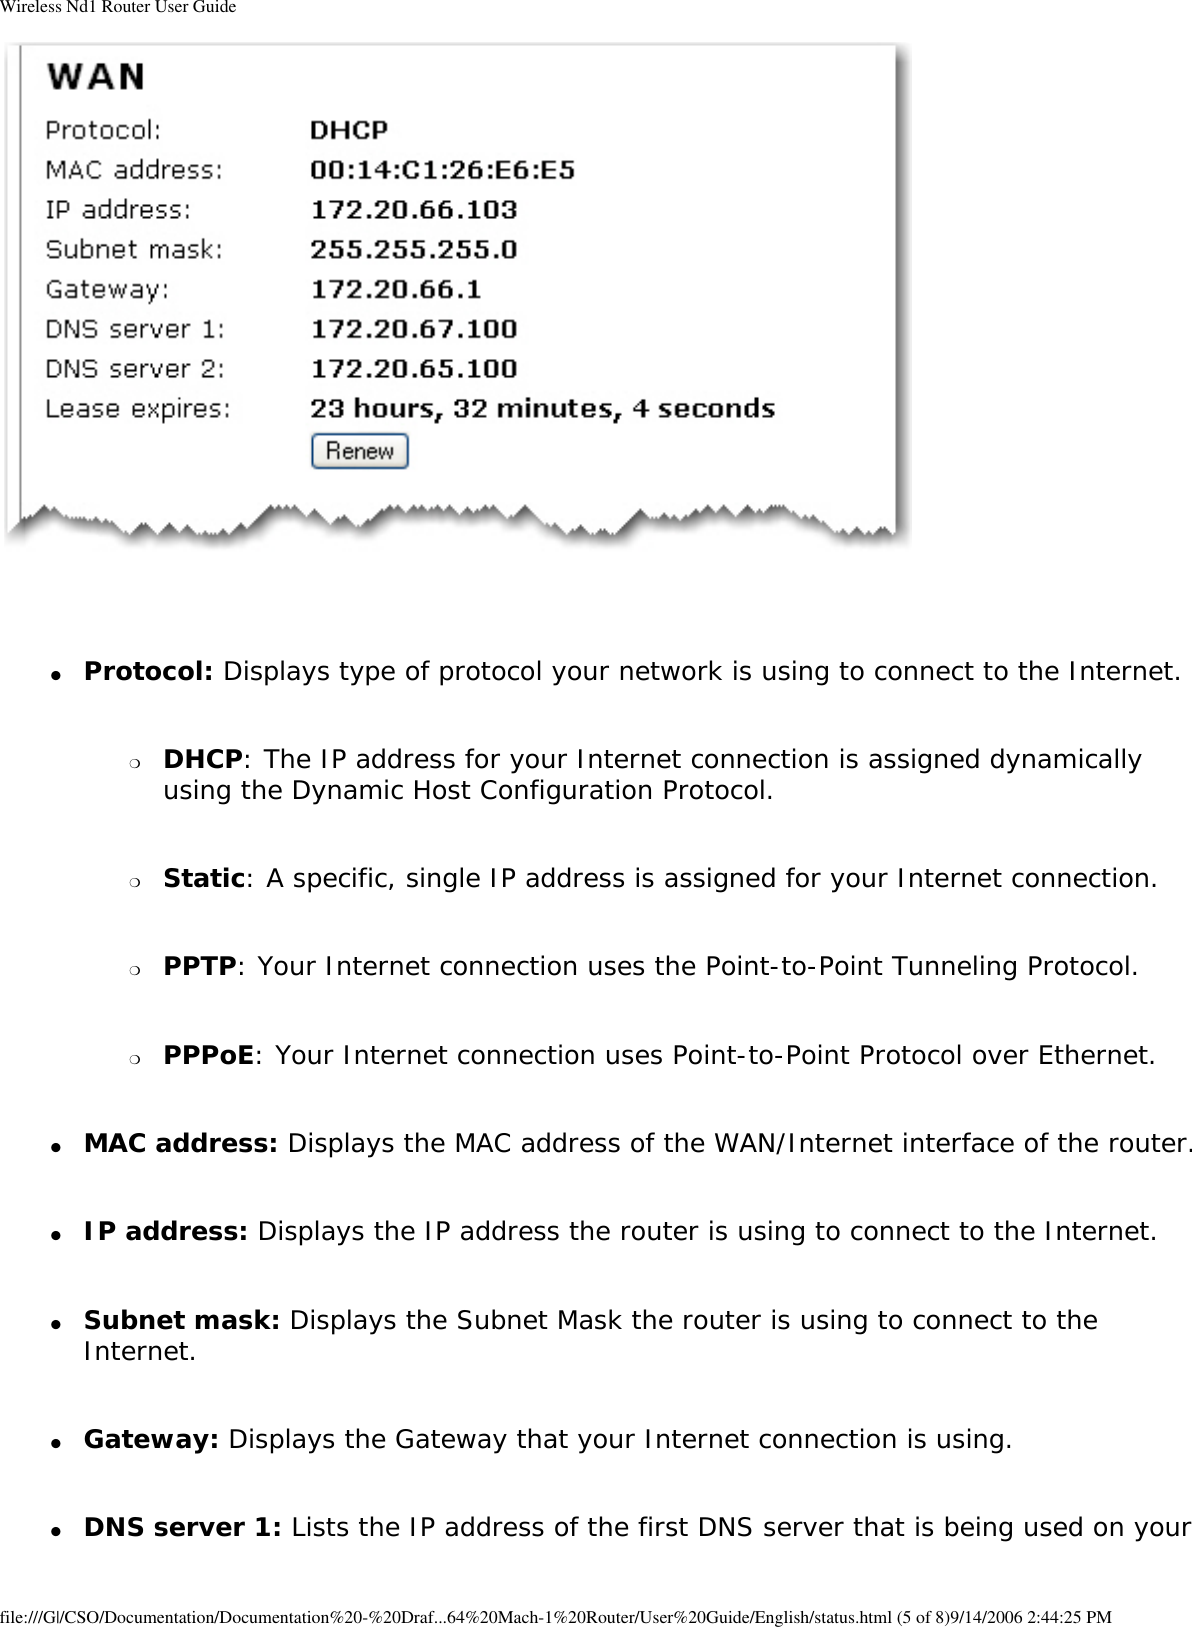 Page 78 of GemTek Technology R950630GN USRobotics Wireless Nd1 Router User Manual Wireless Nd1 Router User Guide